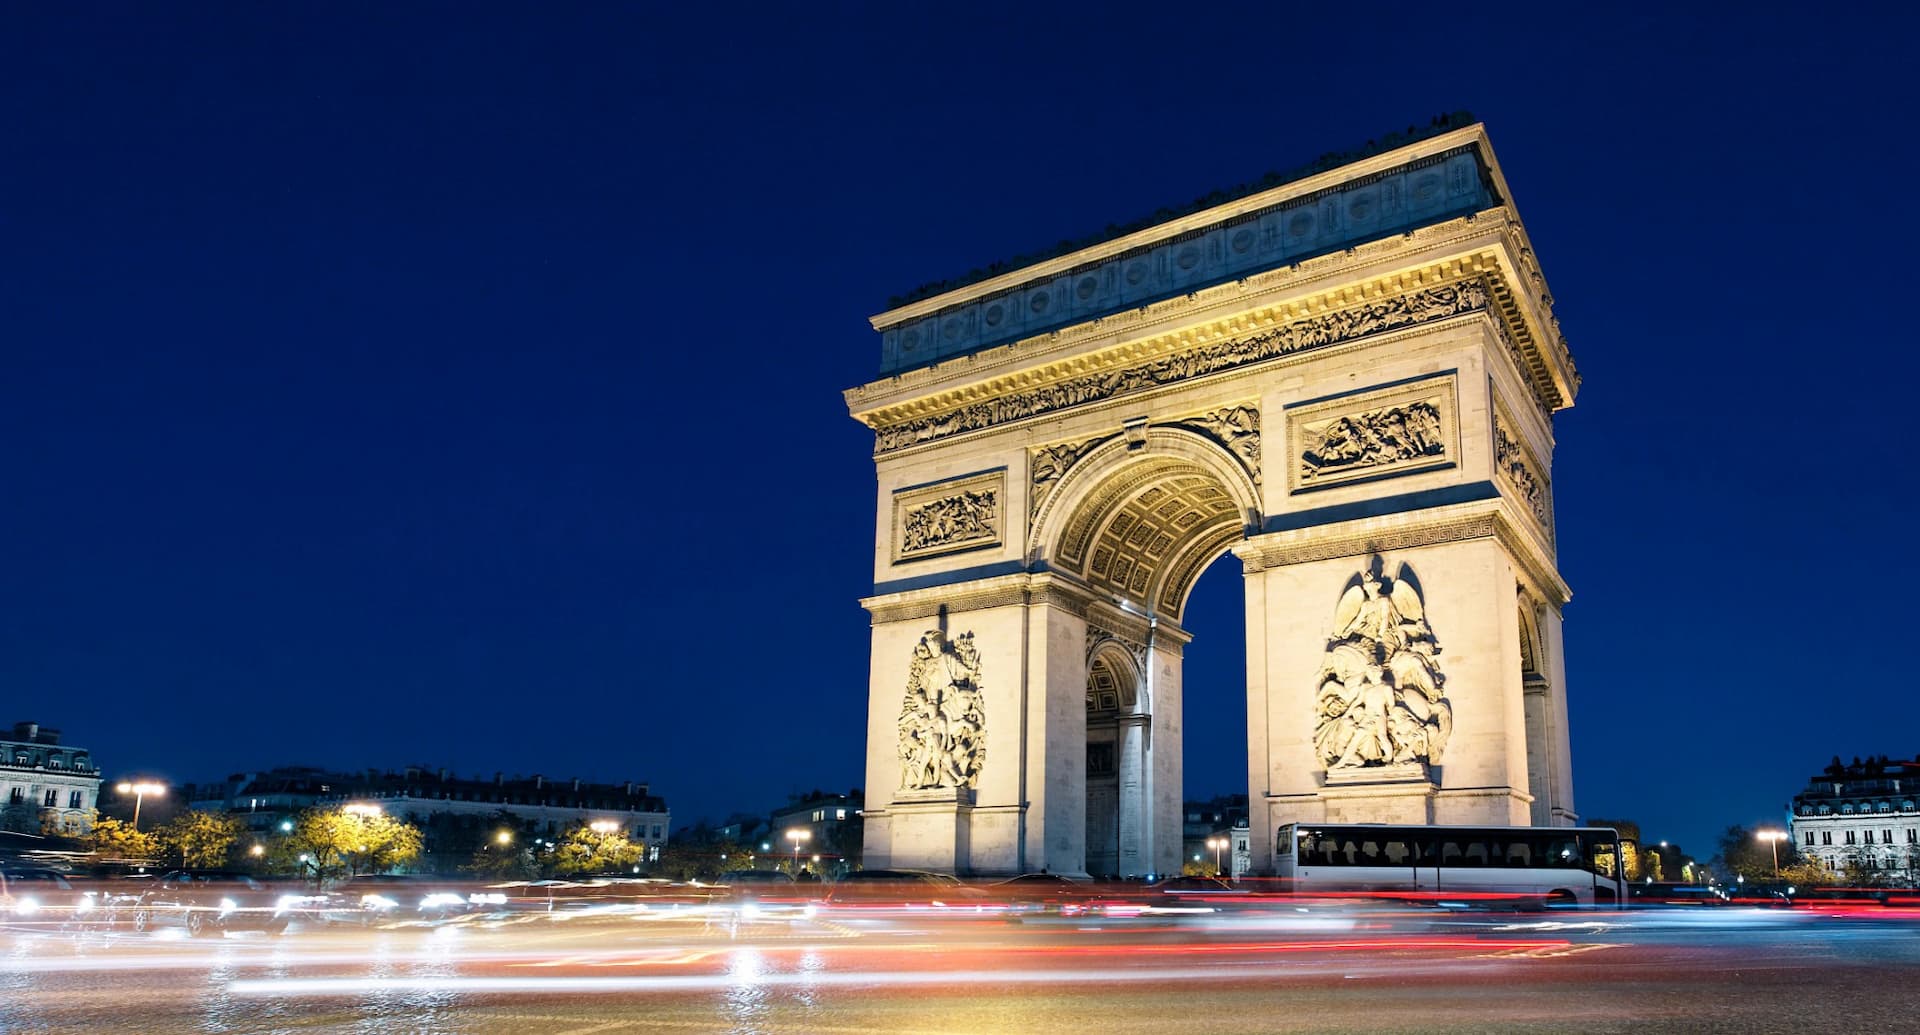 The Arc de Triomphe in Paris illuminated at night